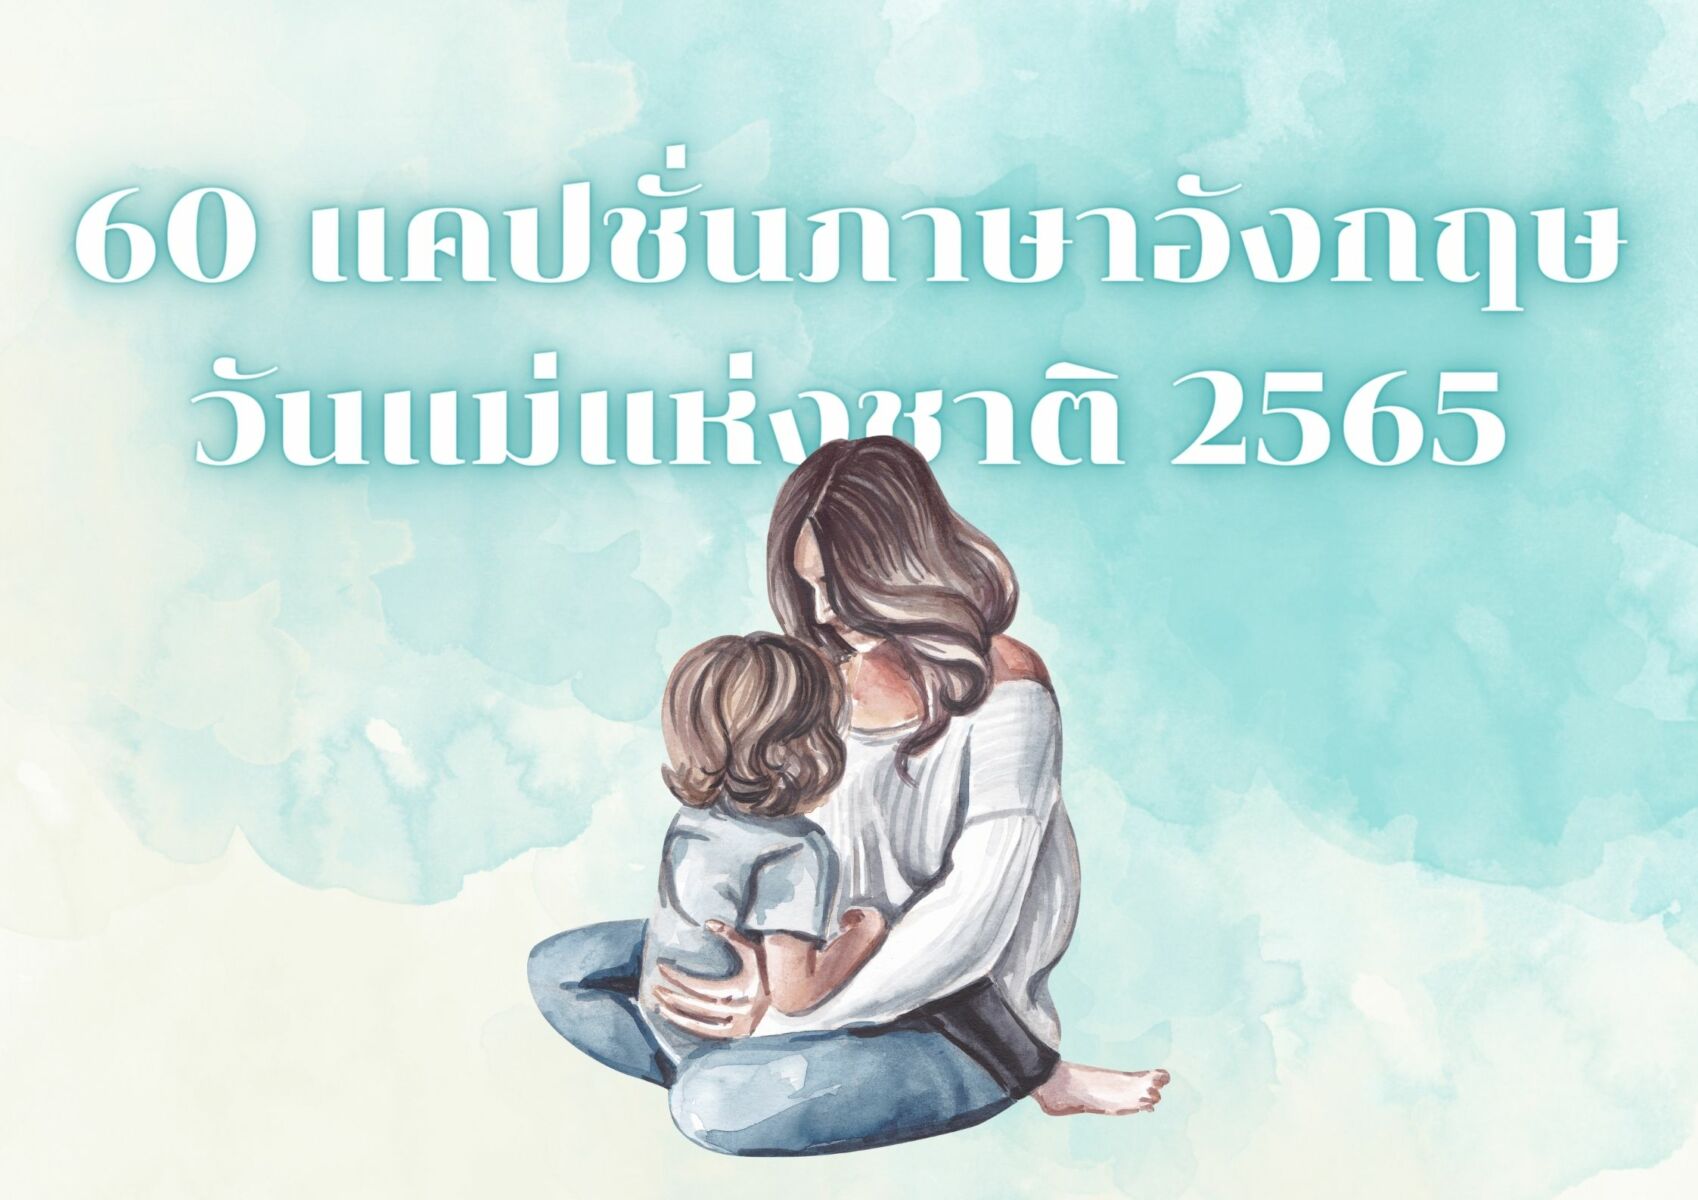 60 แคปชั่นวันแม่ 2565 ภาษาอังกฤษ ข้อความไหนก็แปลได้ว่ารักแม่ | Thaiger  ข่าวไทย